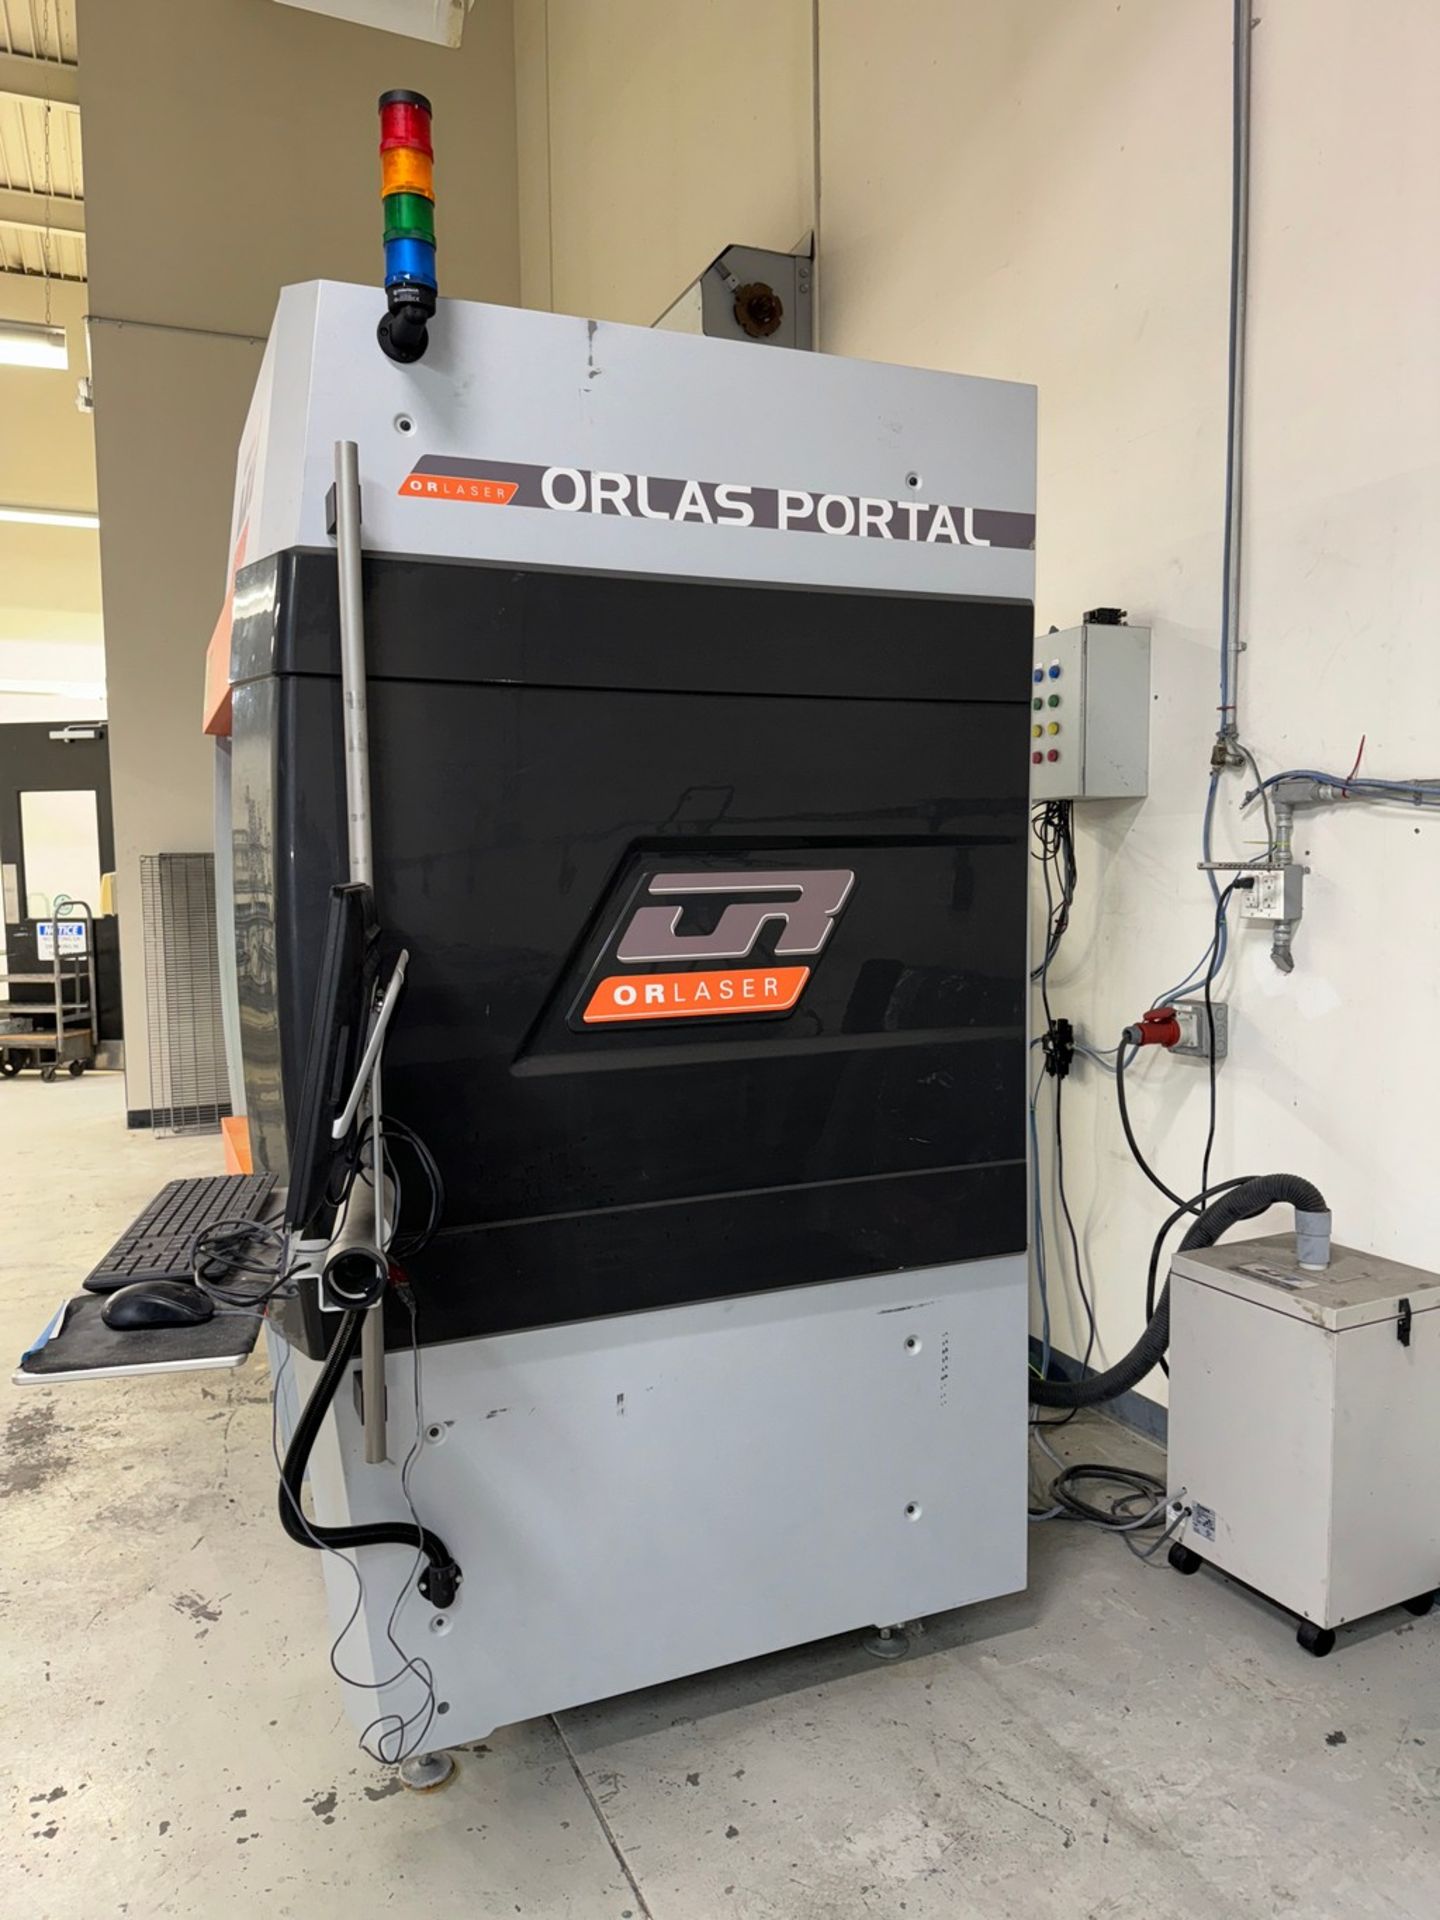 OR-Laser Orlas Portal 1000 CNC Laser Engraving Machine - Image 3 of 9